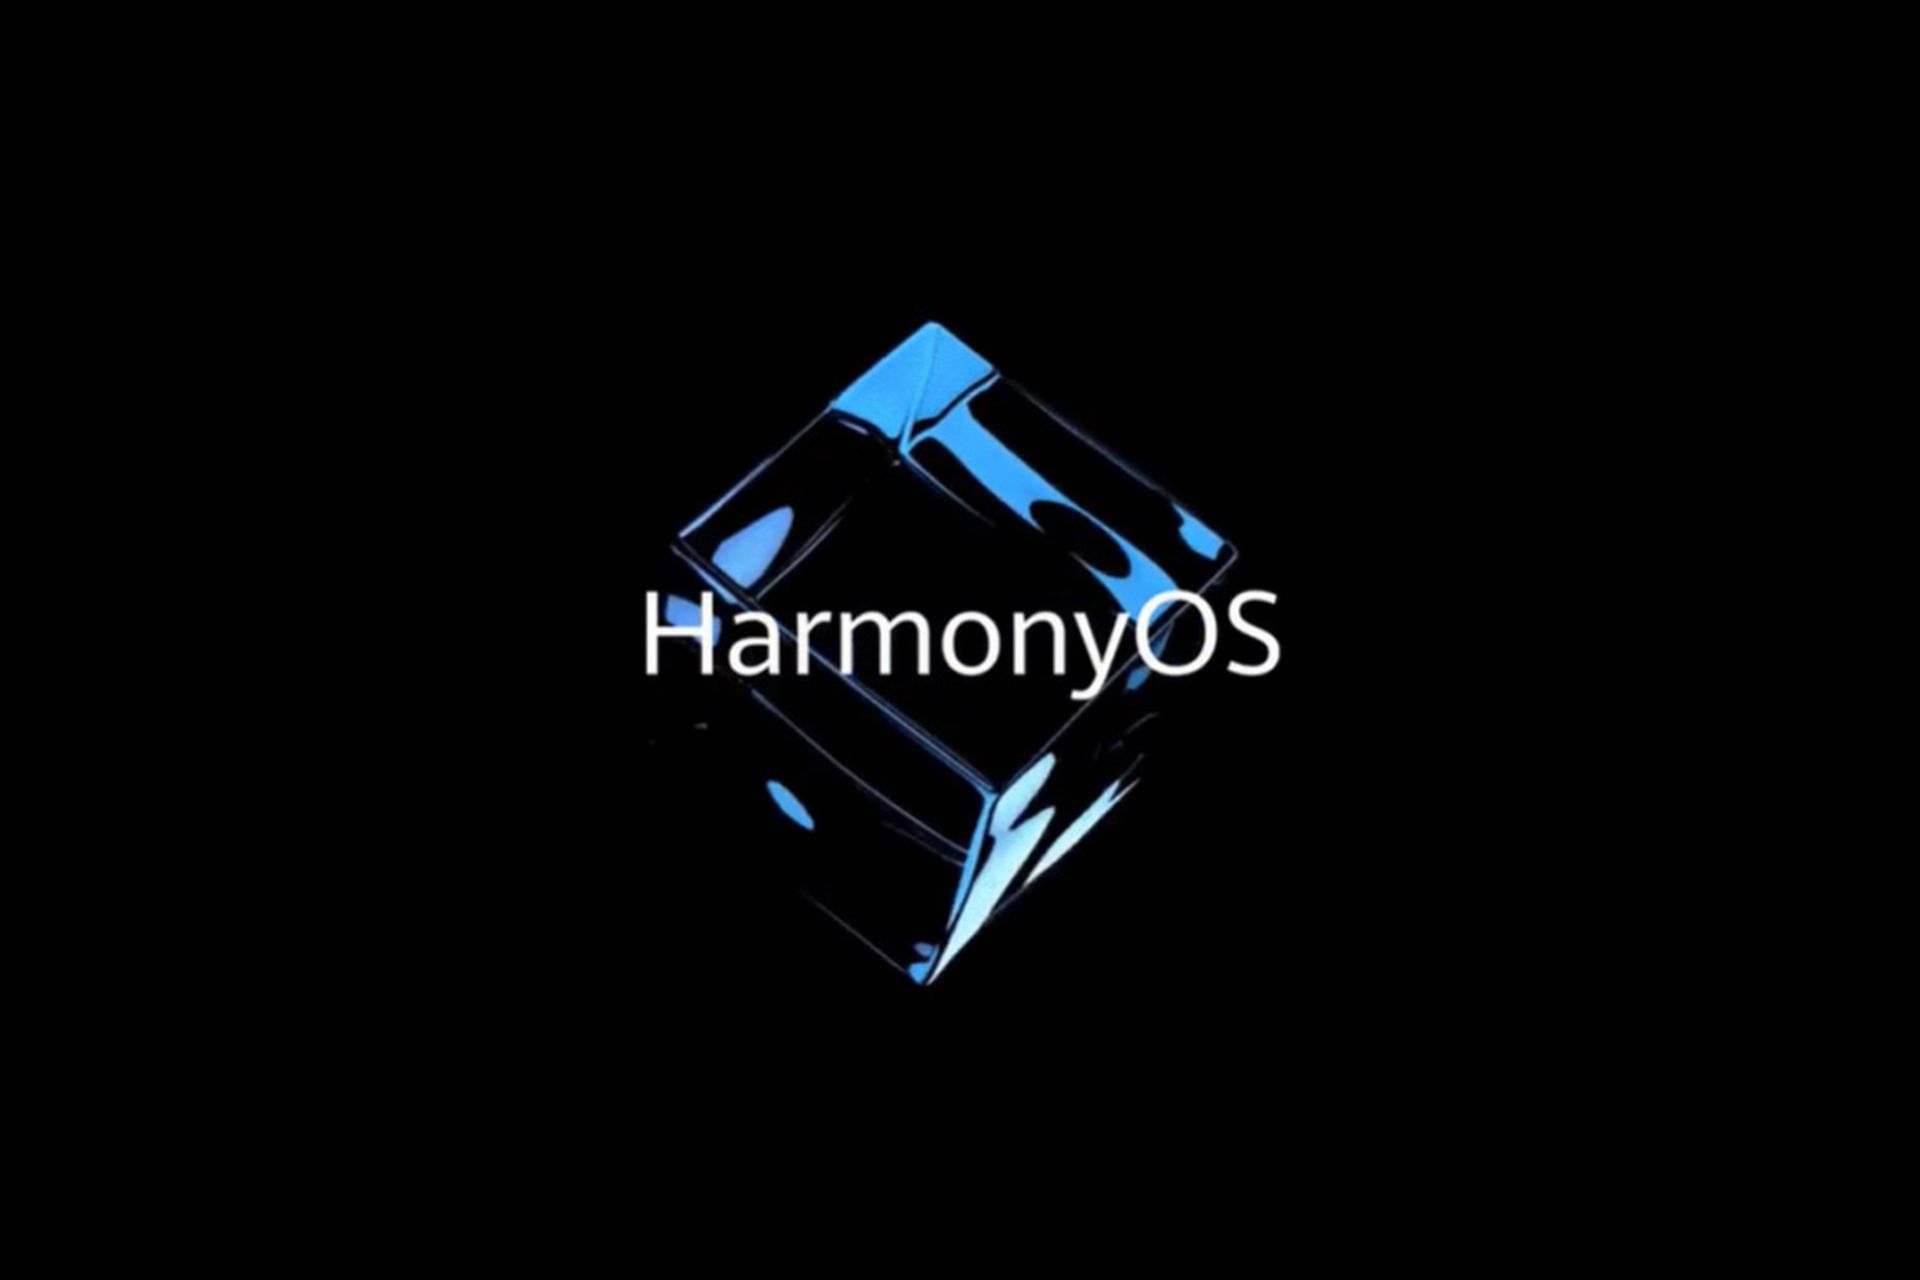 مرجع متخصصين ايران سيستم عامل هارموني هواوي / Huawei HarmonyOS